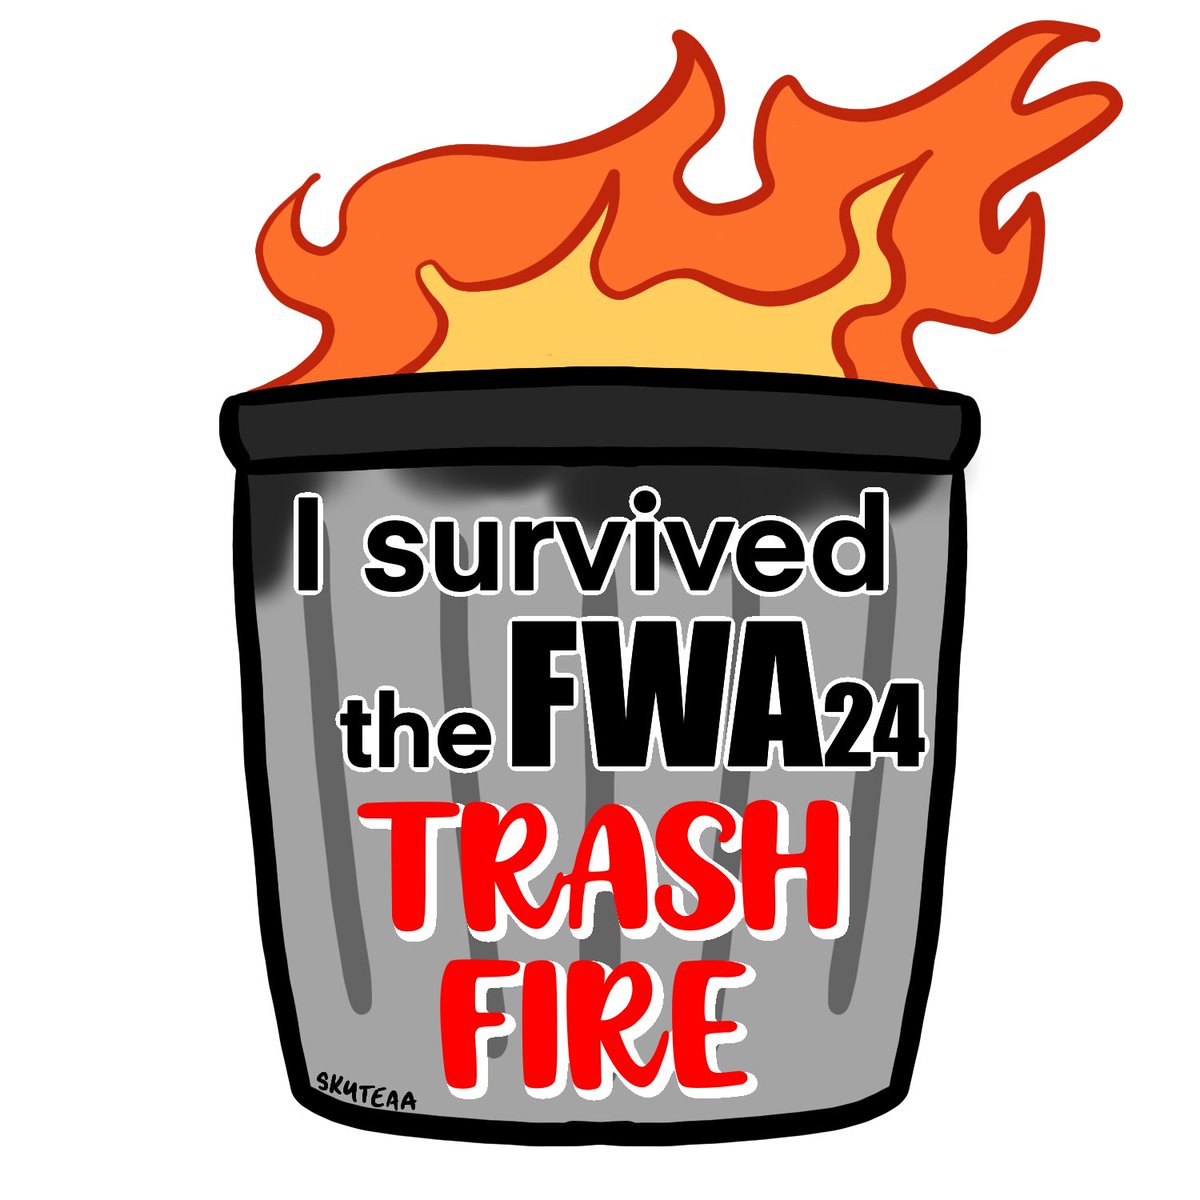 Congrats survivors. 
Graphic design is my passion. #FWA #FWA24